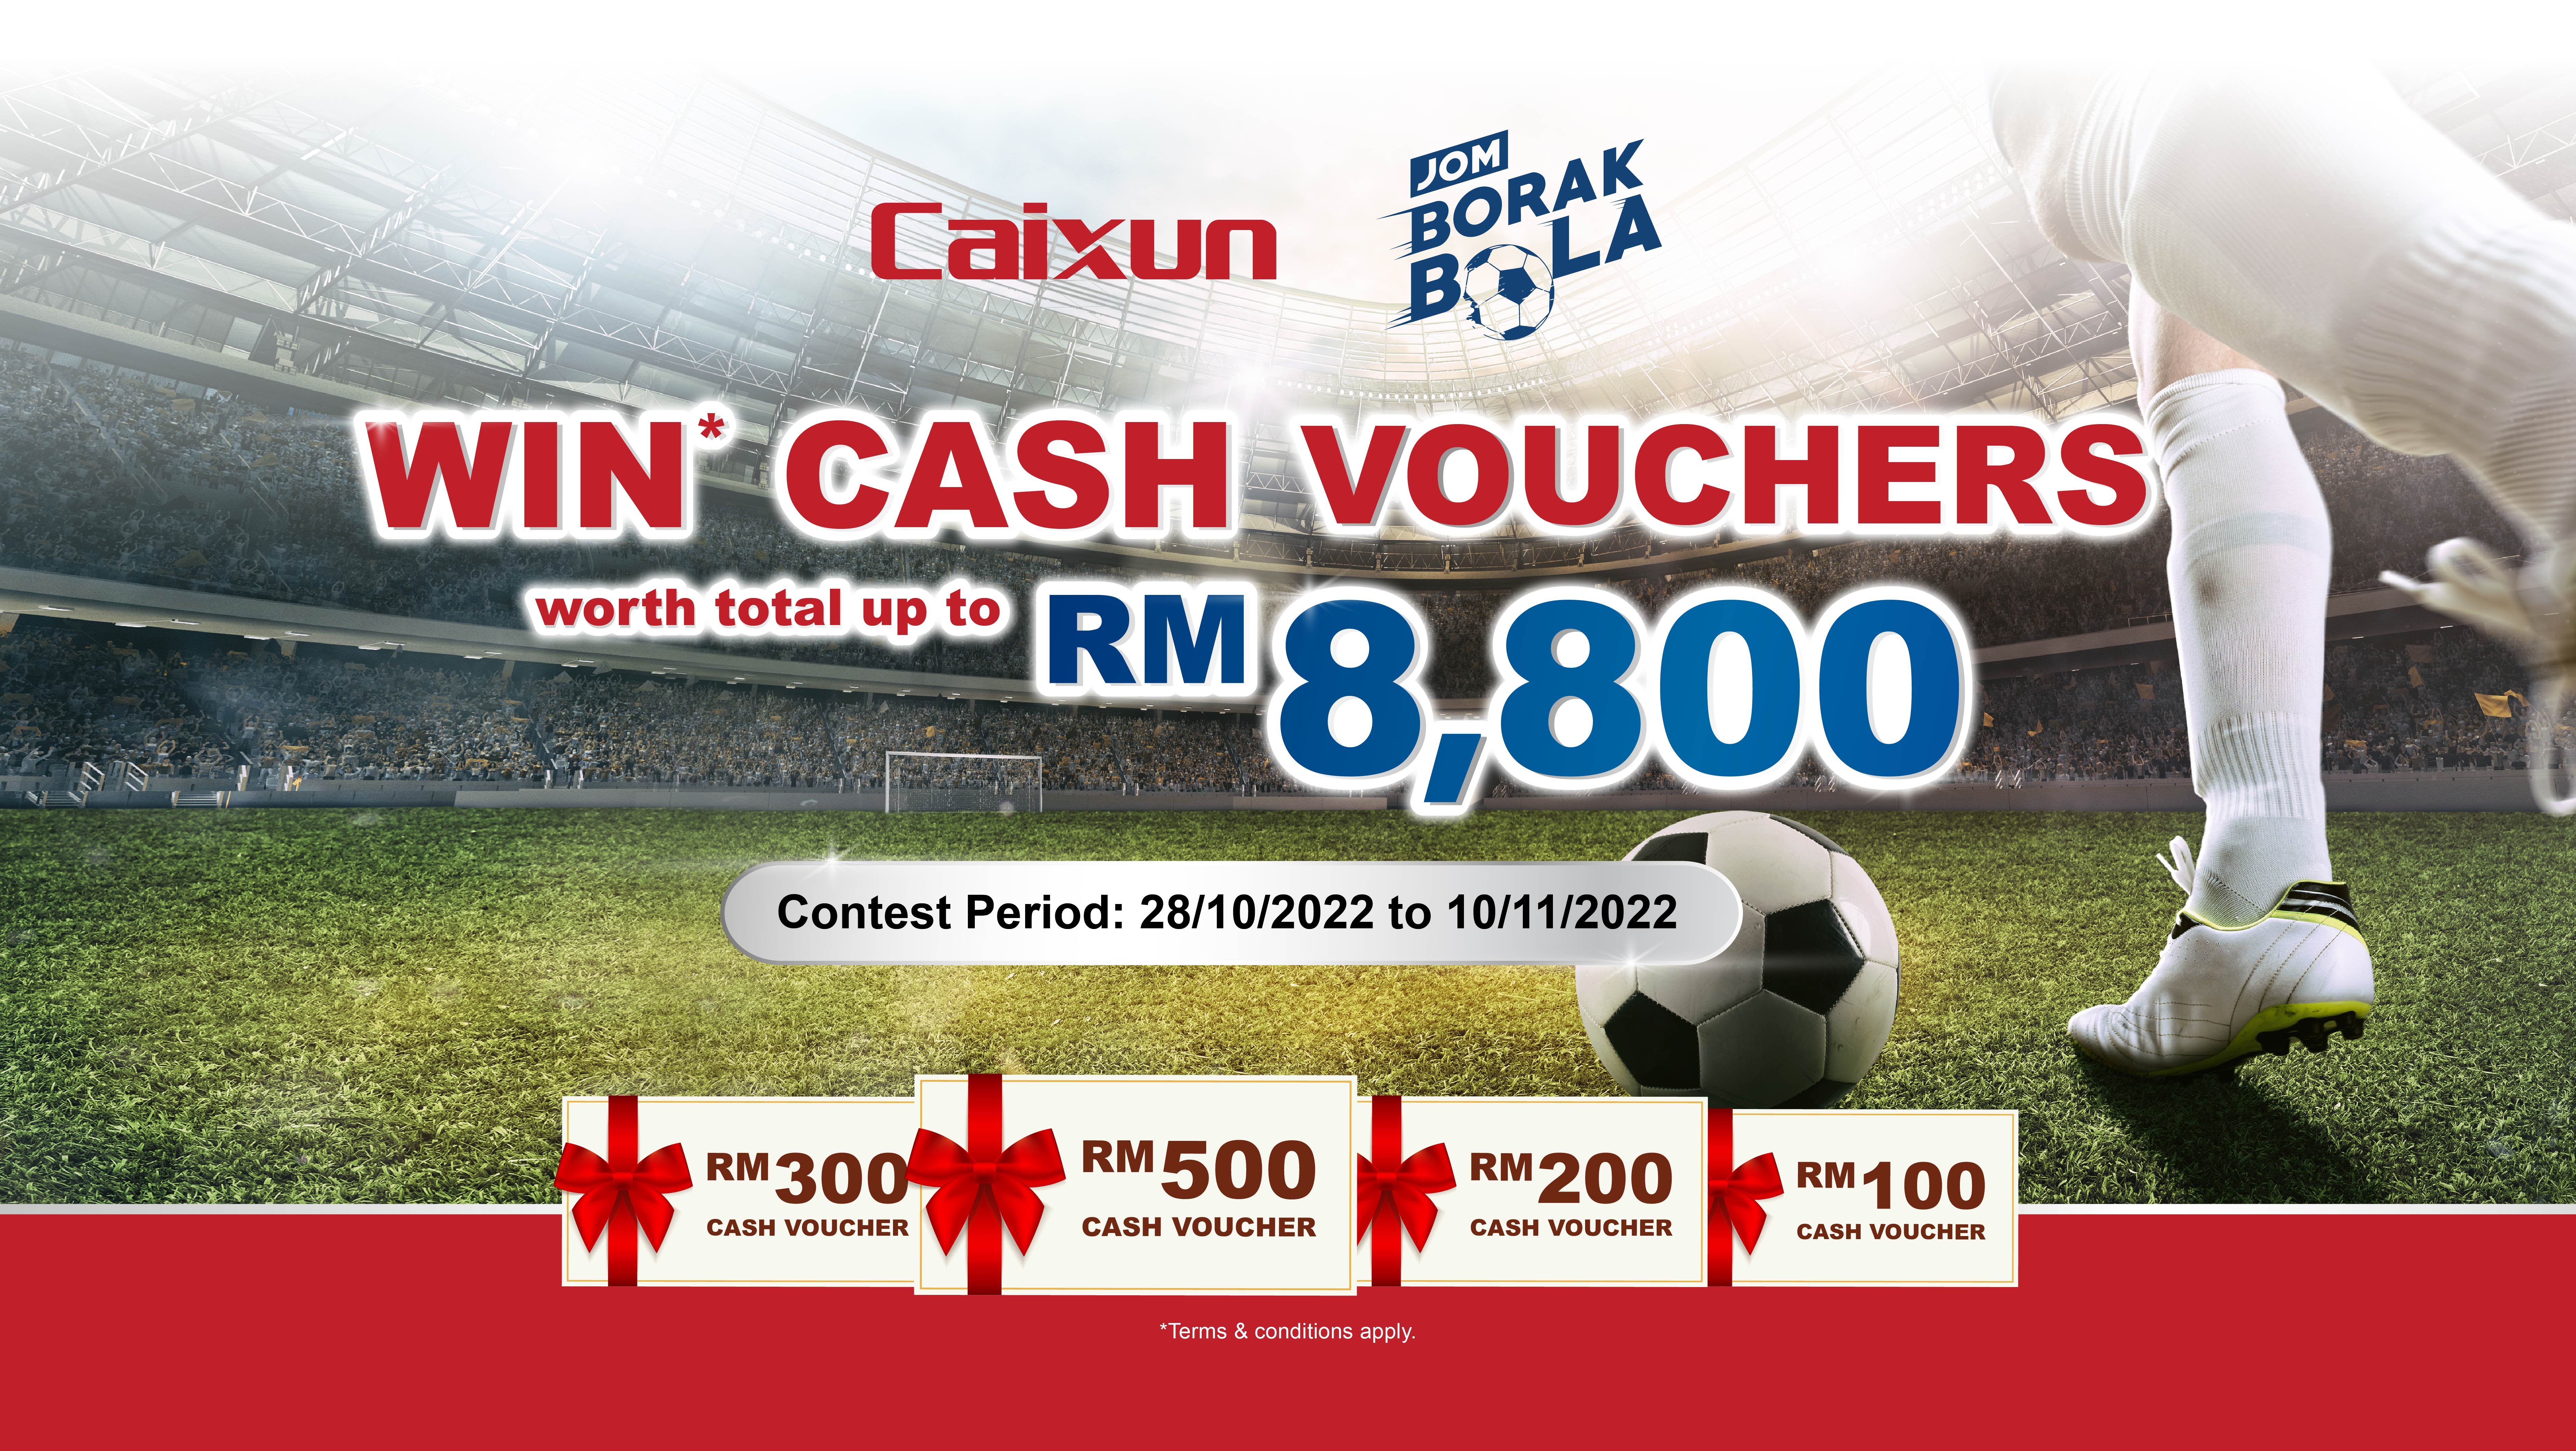 Caixun Malaysia Jom Borak Bola 2022 Giveaway